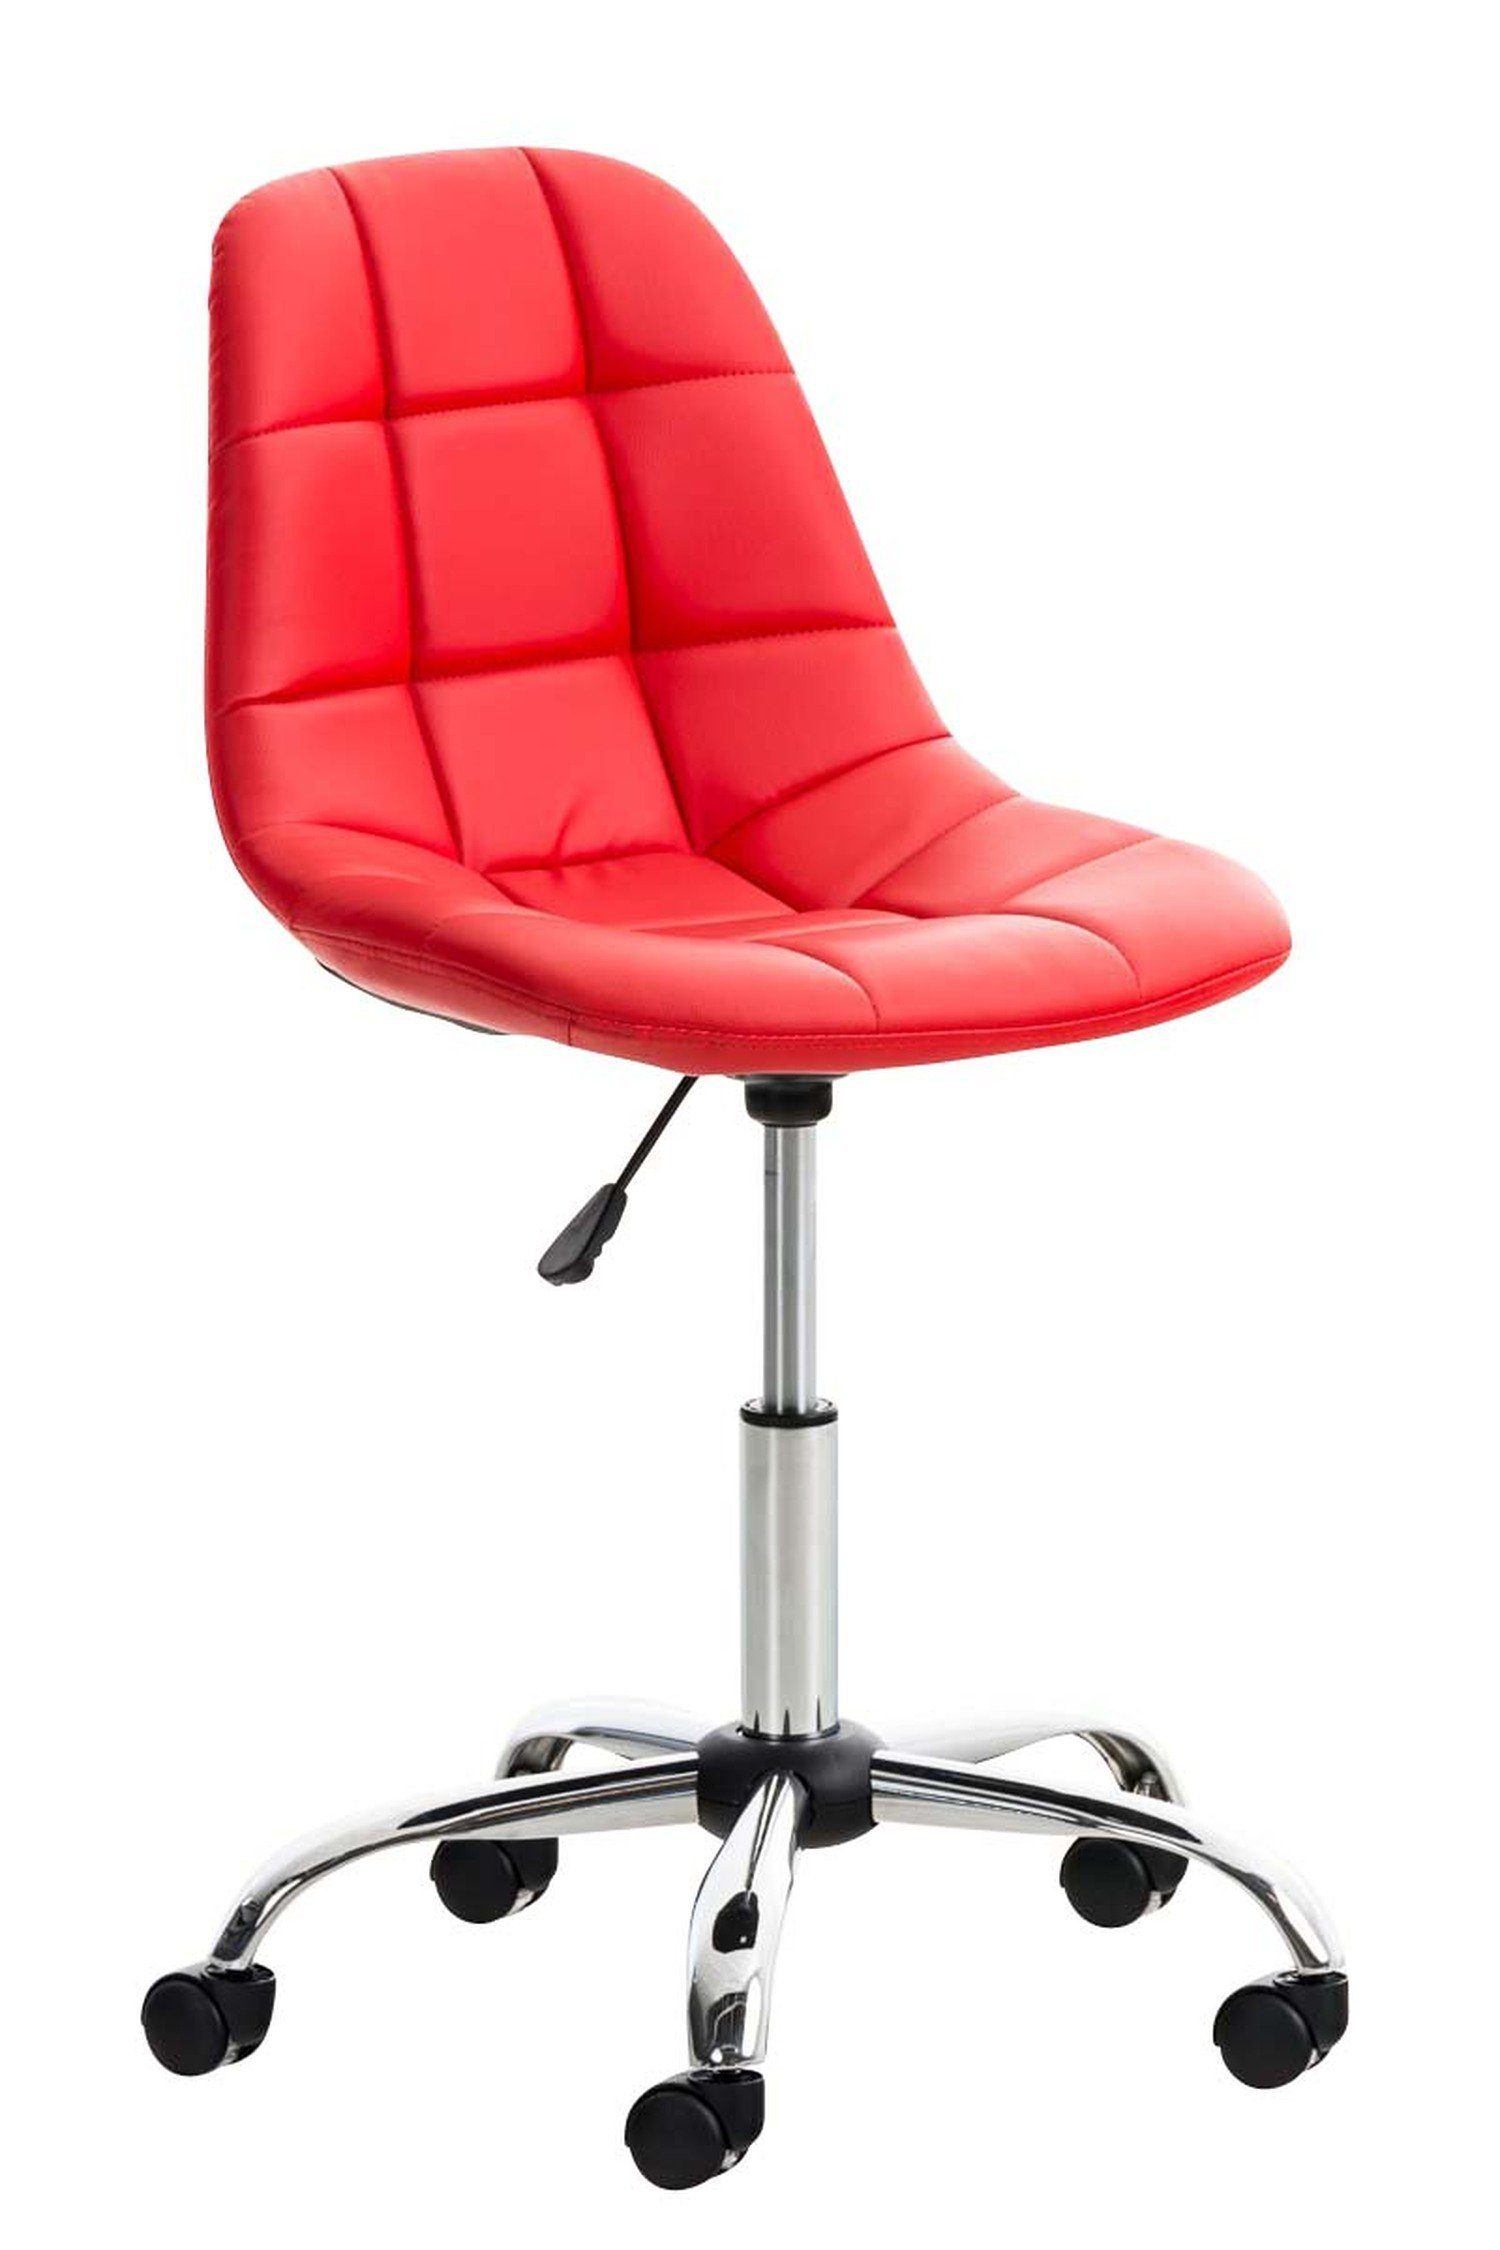 TPFLiving Bürostuhl Emily mit bequemer Rückenlehne - höhenverstellbar und 360° drehbar (Schreibtischstuhl, Drehstuhl, Chefsessel, Konferenzstuhl), Gestell: Metall chrom - Sitzfläche: Kunstleder rot